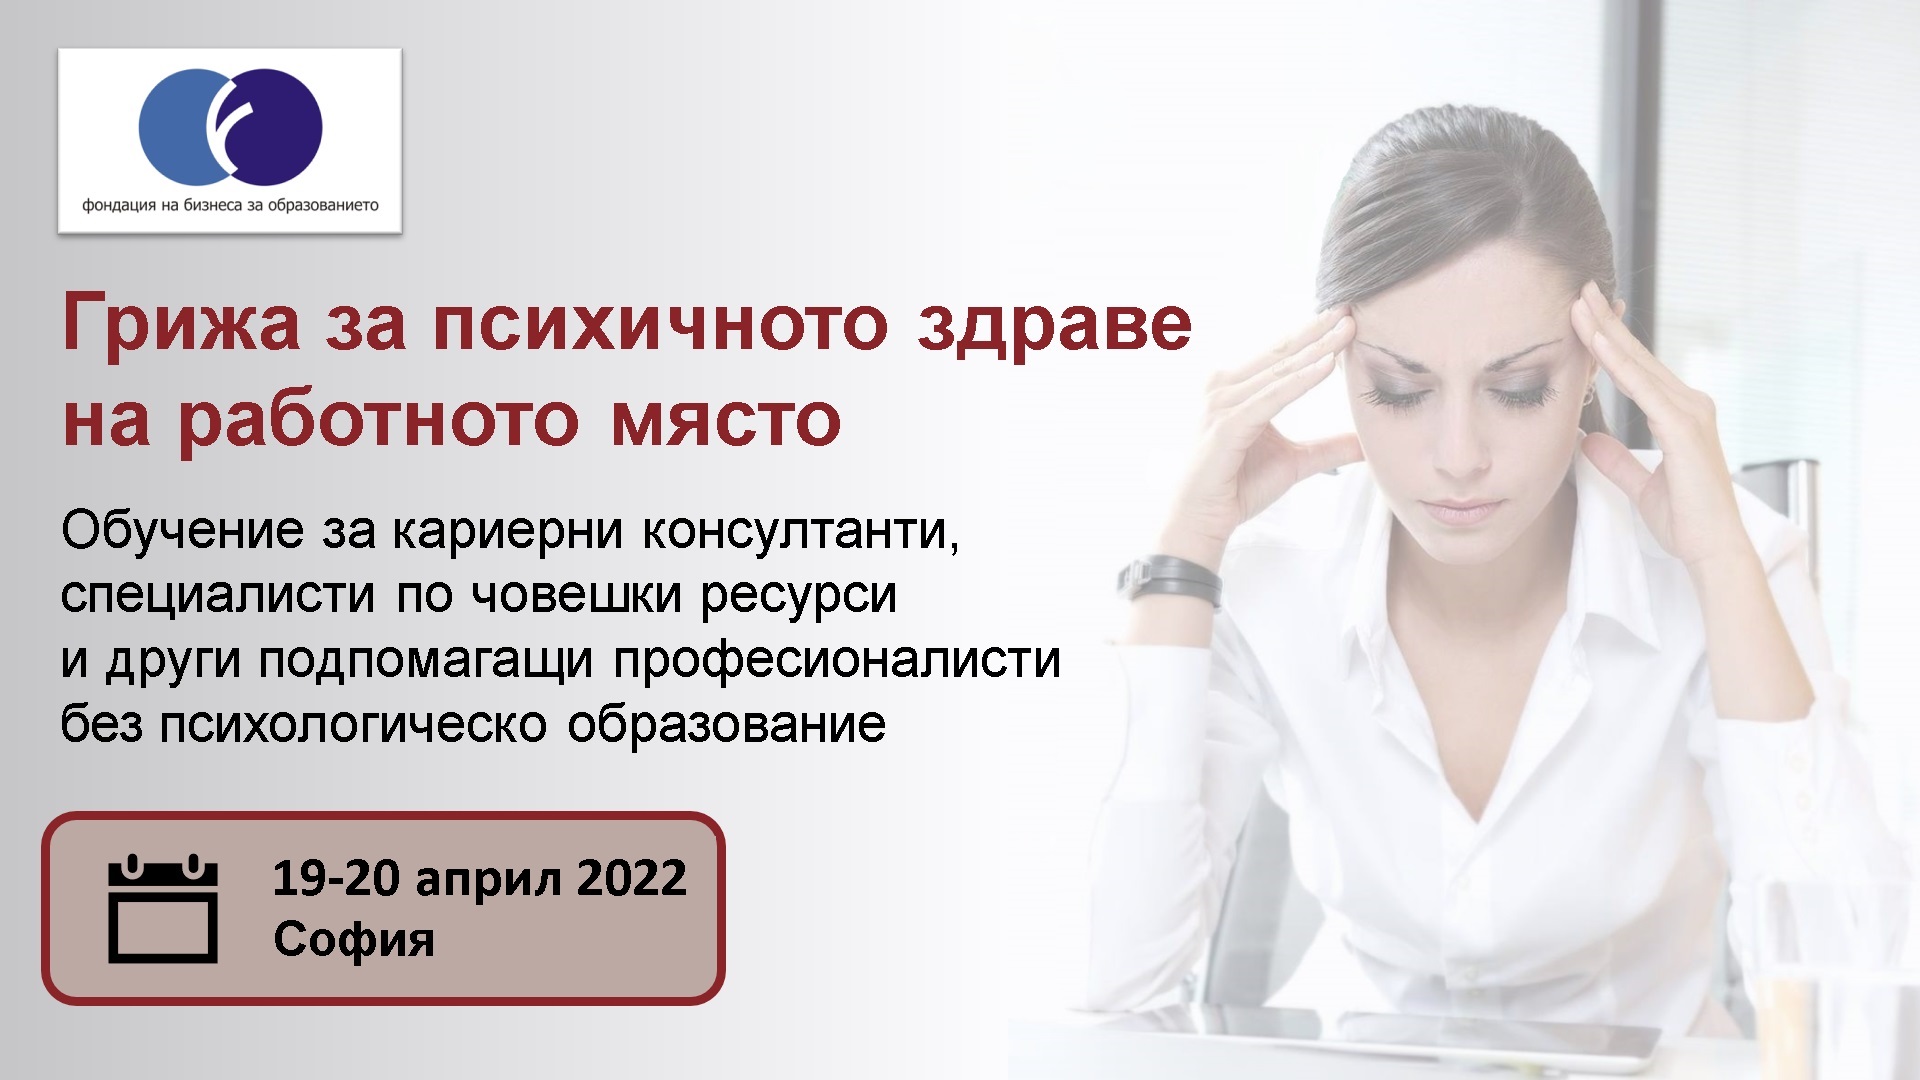 Практическо обучение за HR и подпомагащи специалисти ”Грижа за психичното здраве на работното място” (19-20 април 2022)